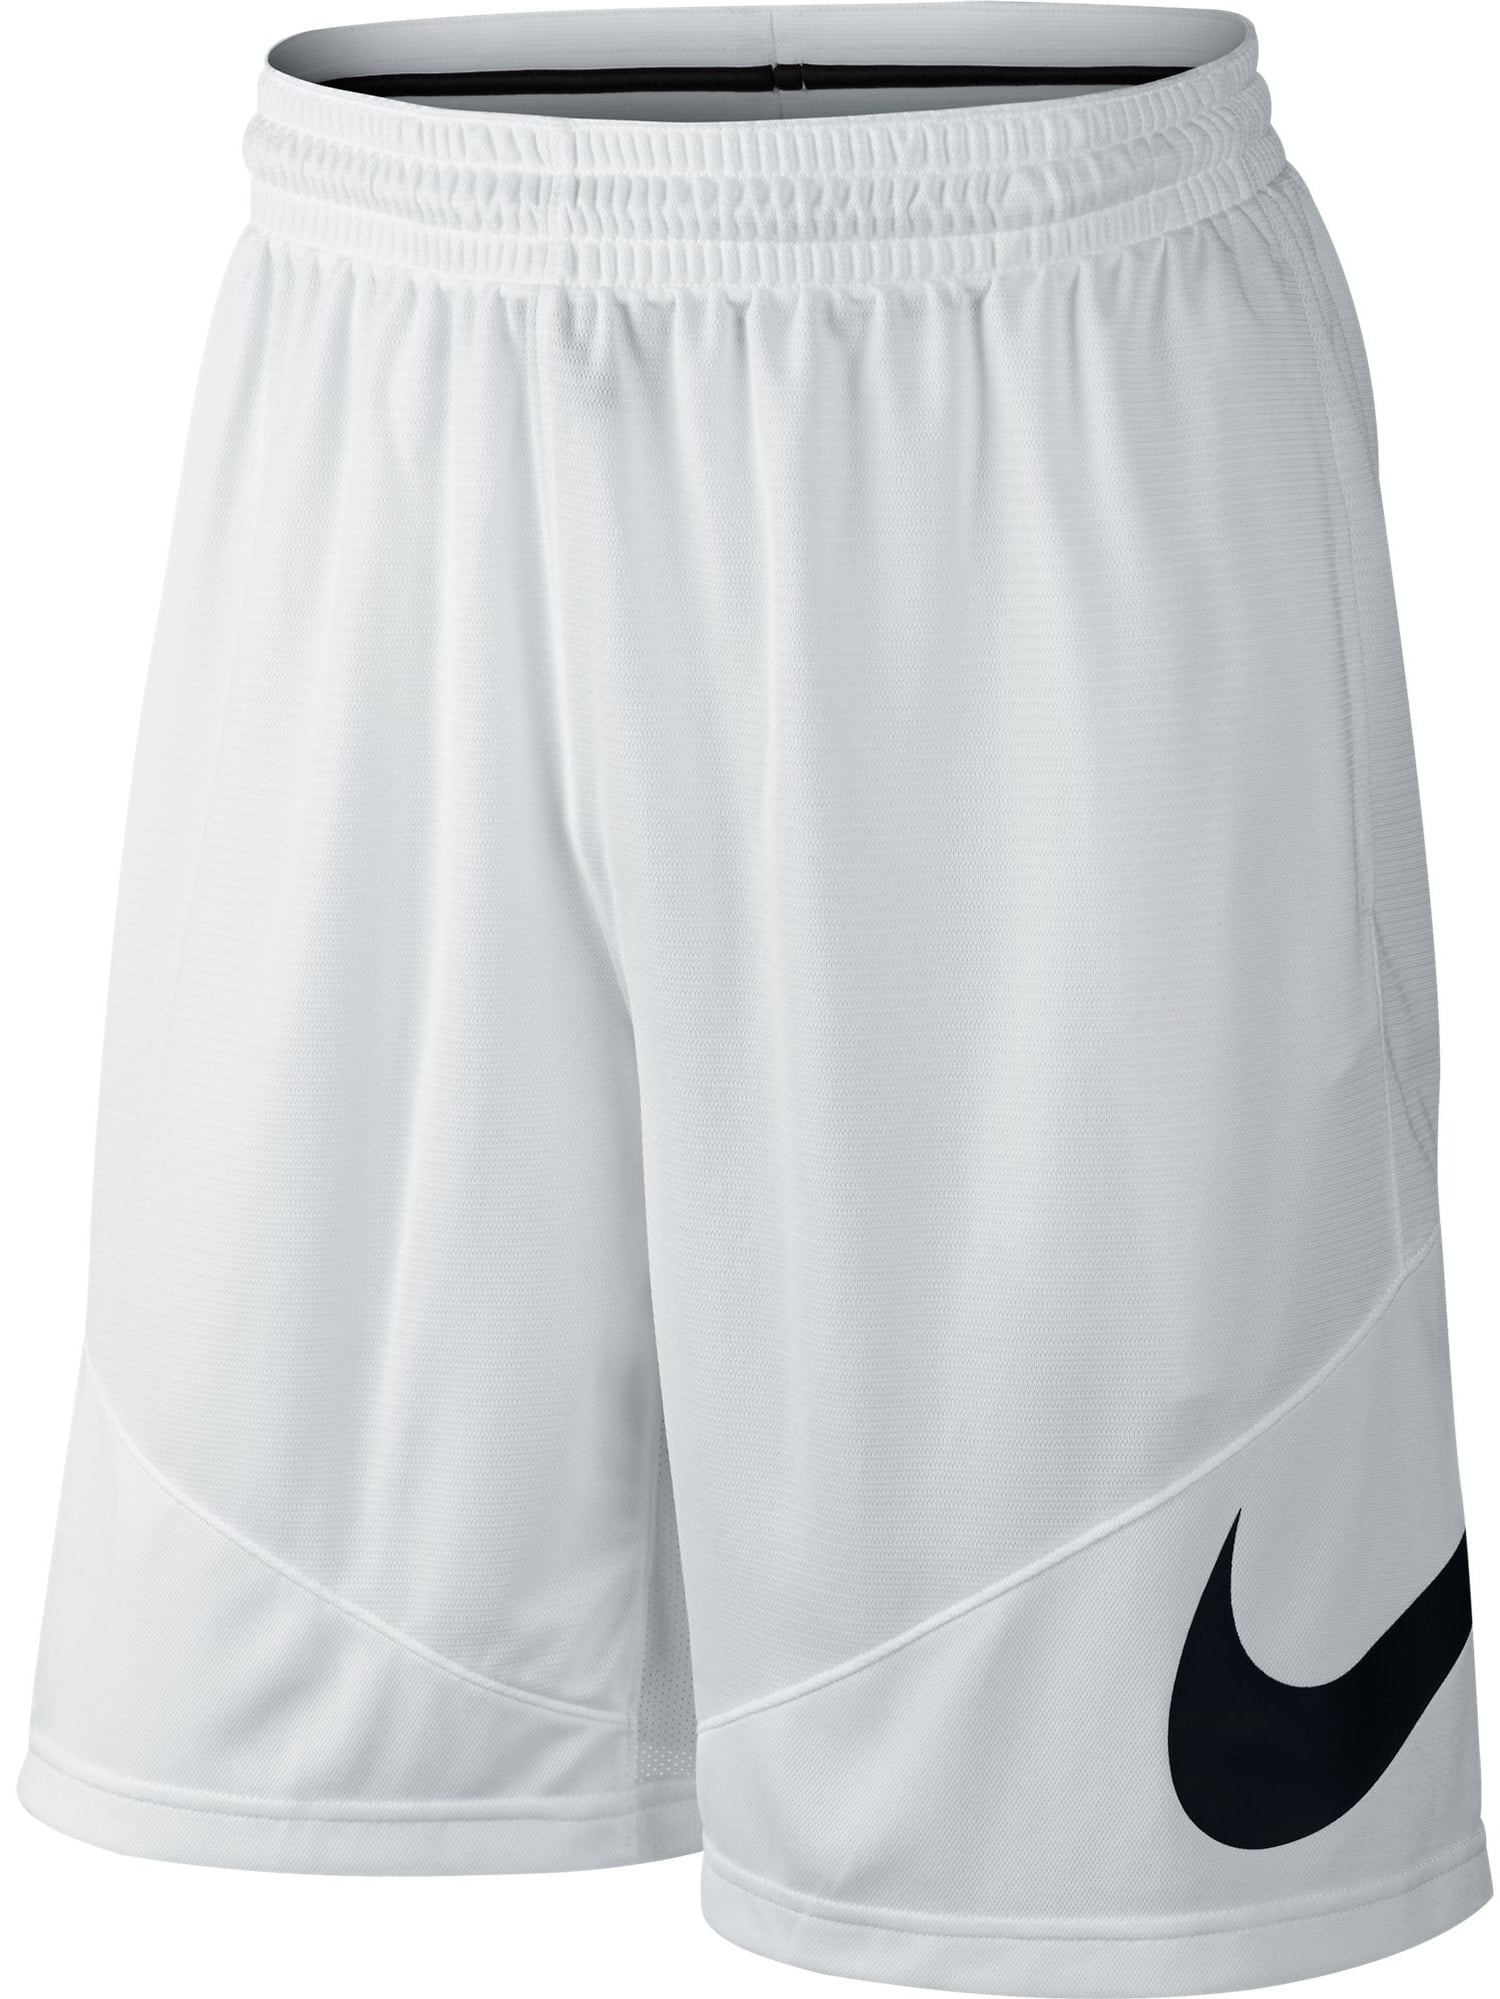 Nike - Nike HBR Dri-Fit Men's Basketball Shorts White/Black 718830-100 ...